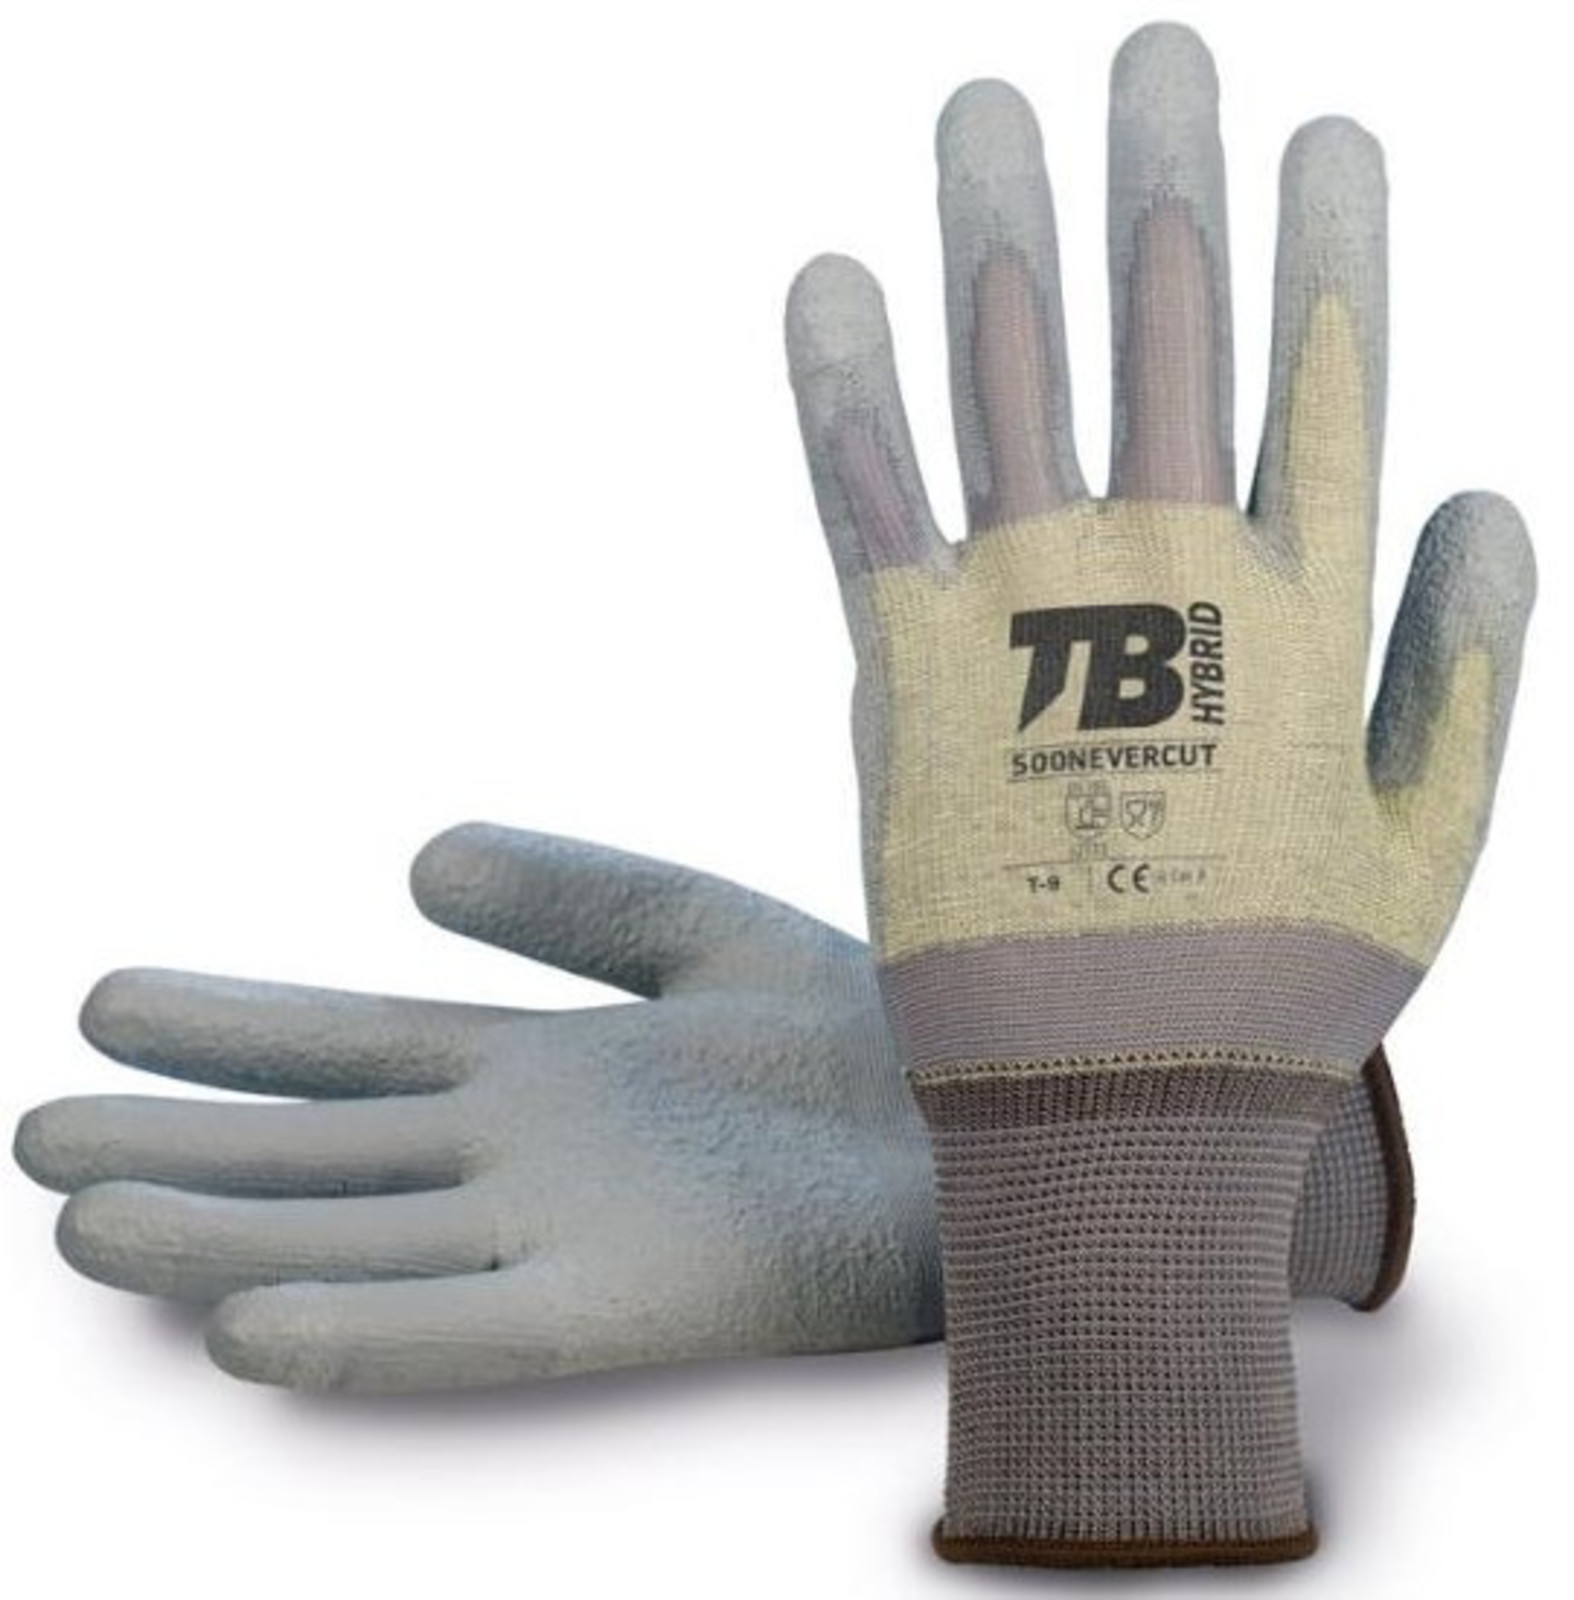 Pracovné rukavice TB 500 Nevercut  - veľkosť: 7/S